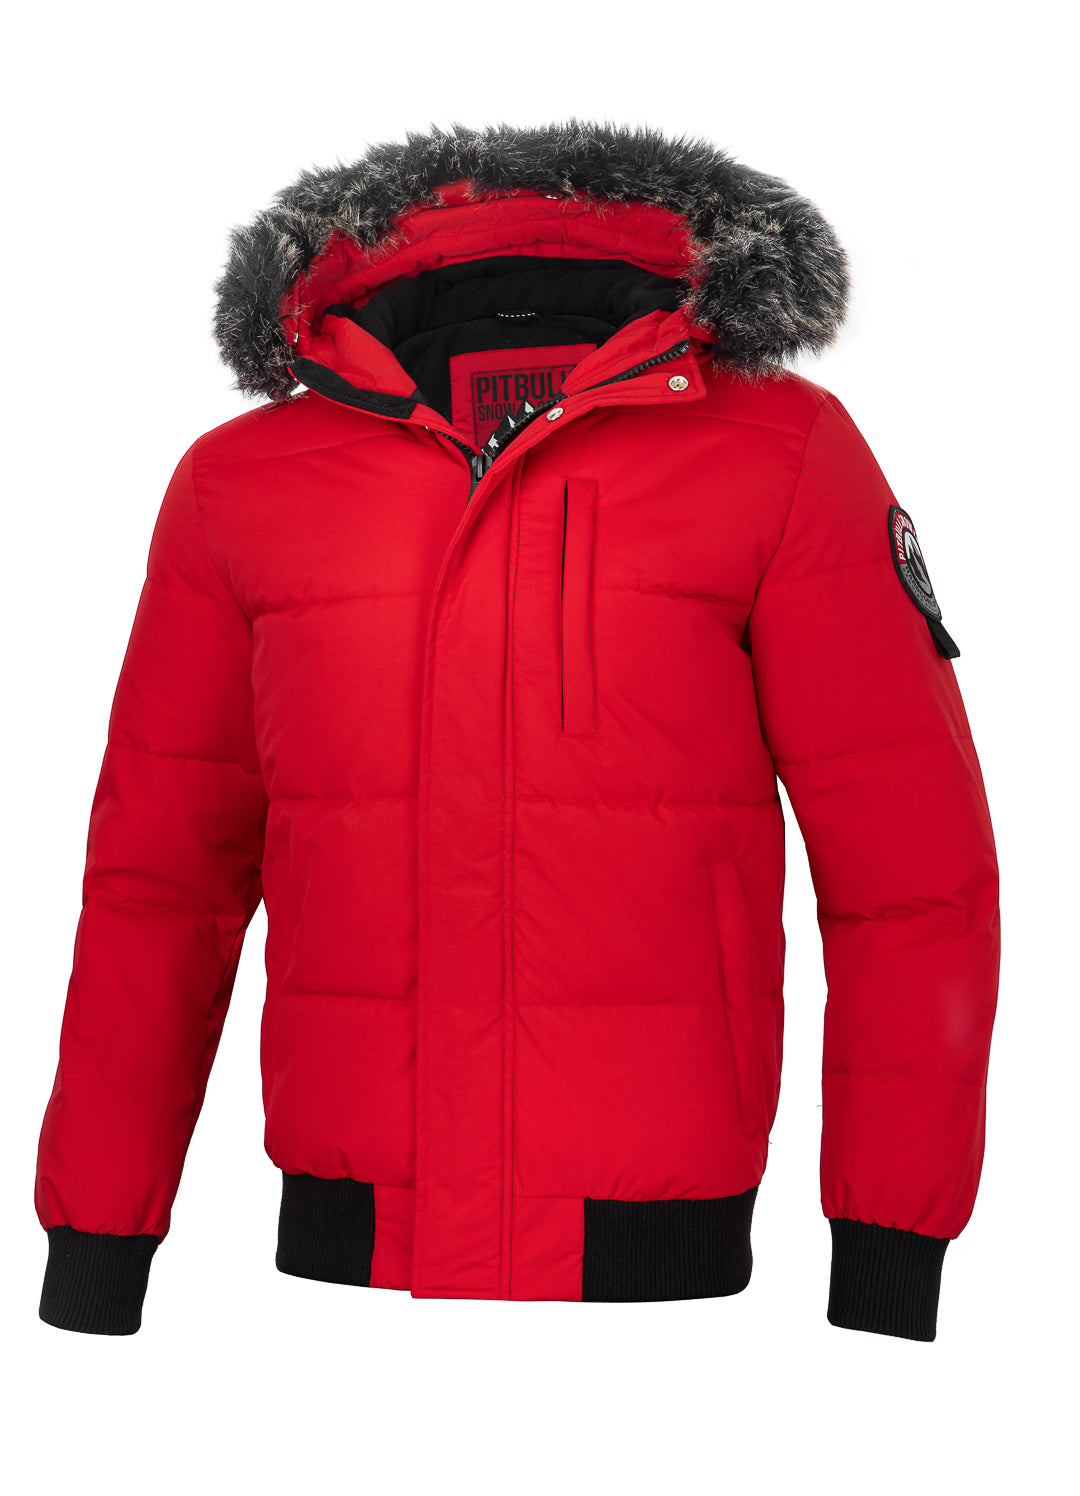 NEWPORT Red Winter Jacket.